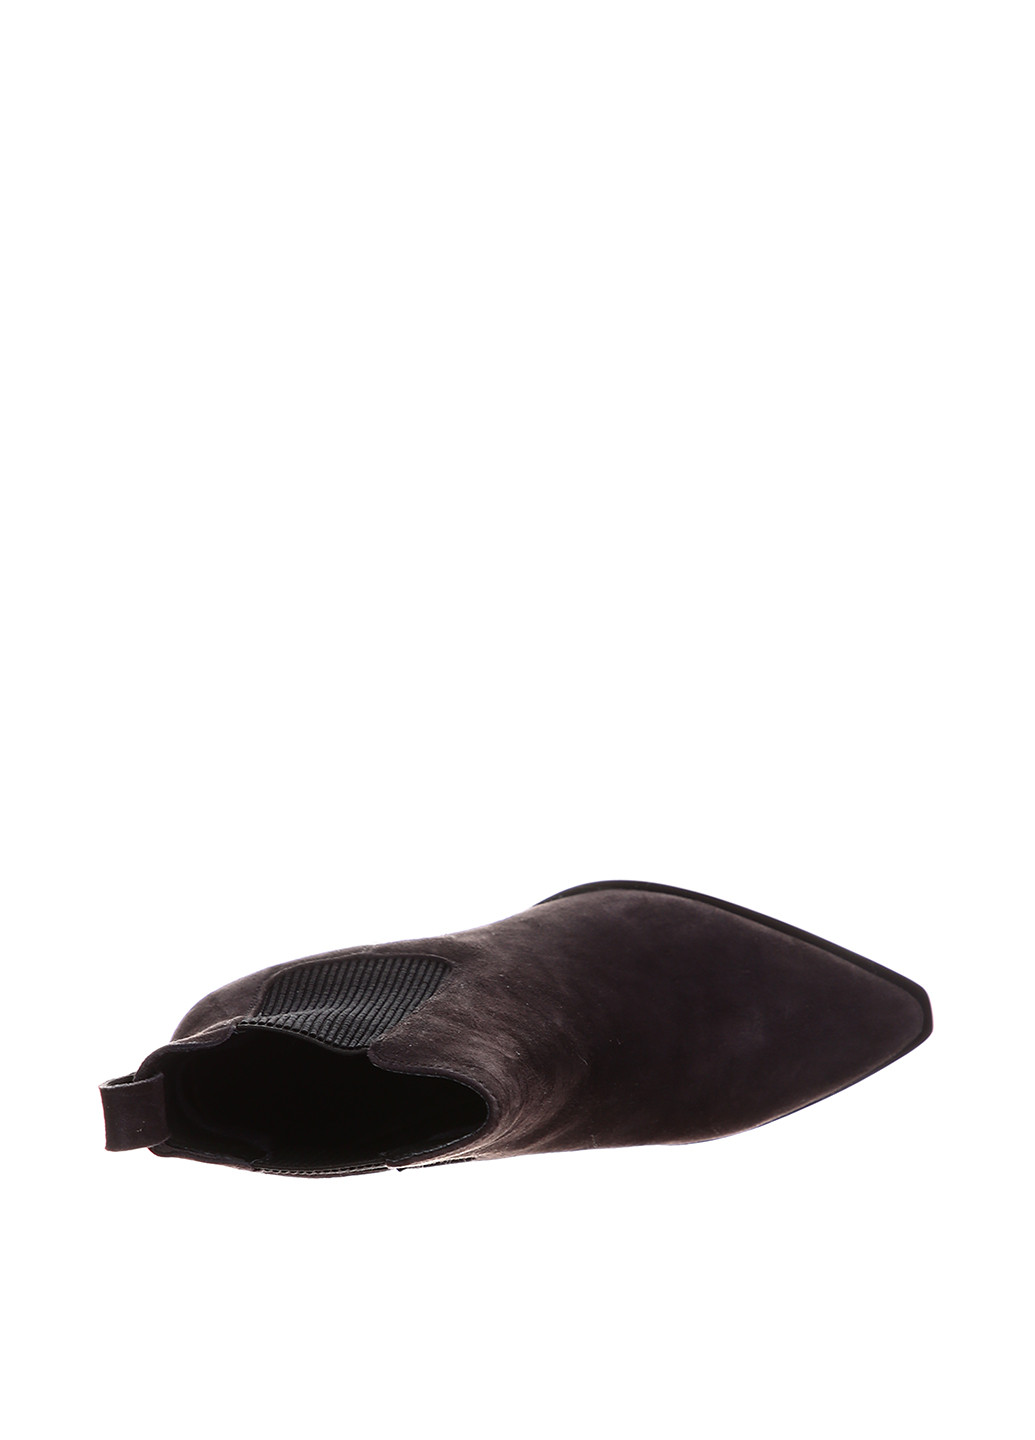 Осенние ботинки челси Brocoli без декора из натуральной замши